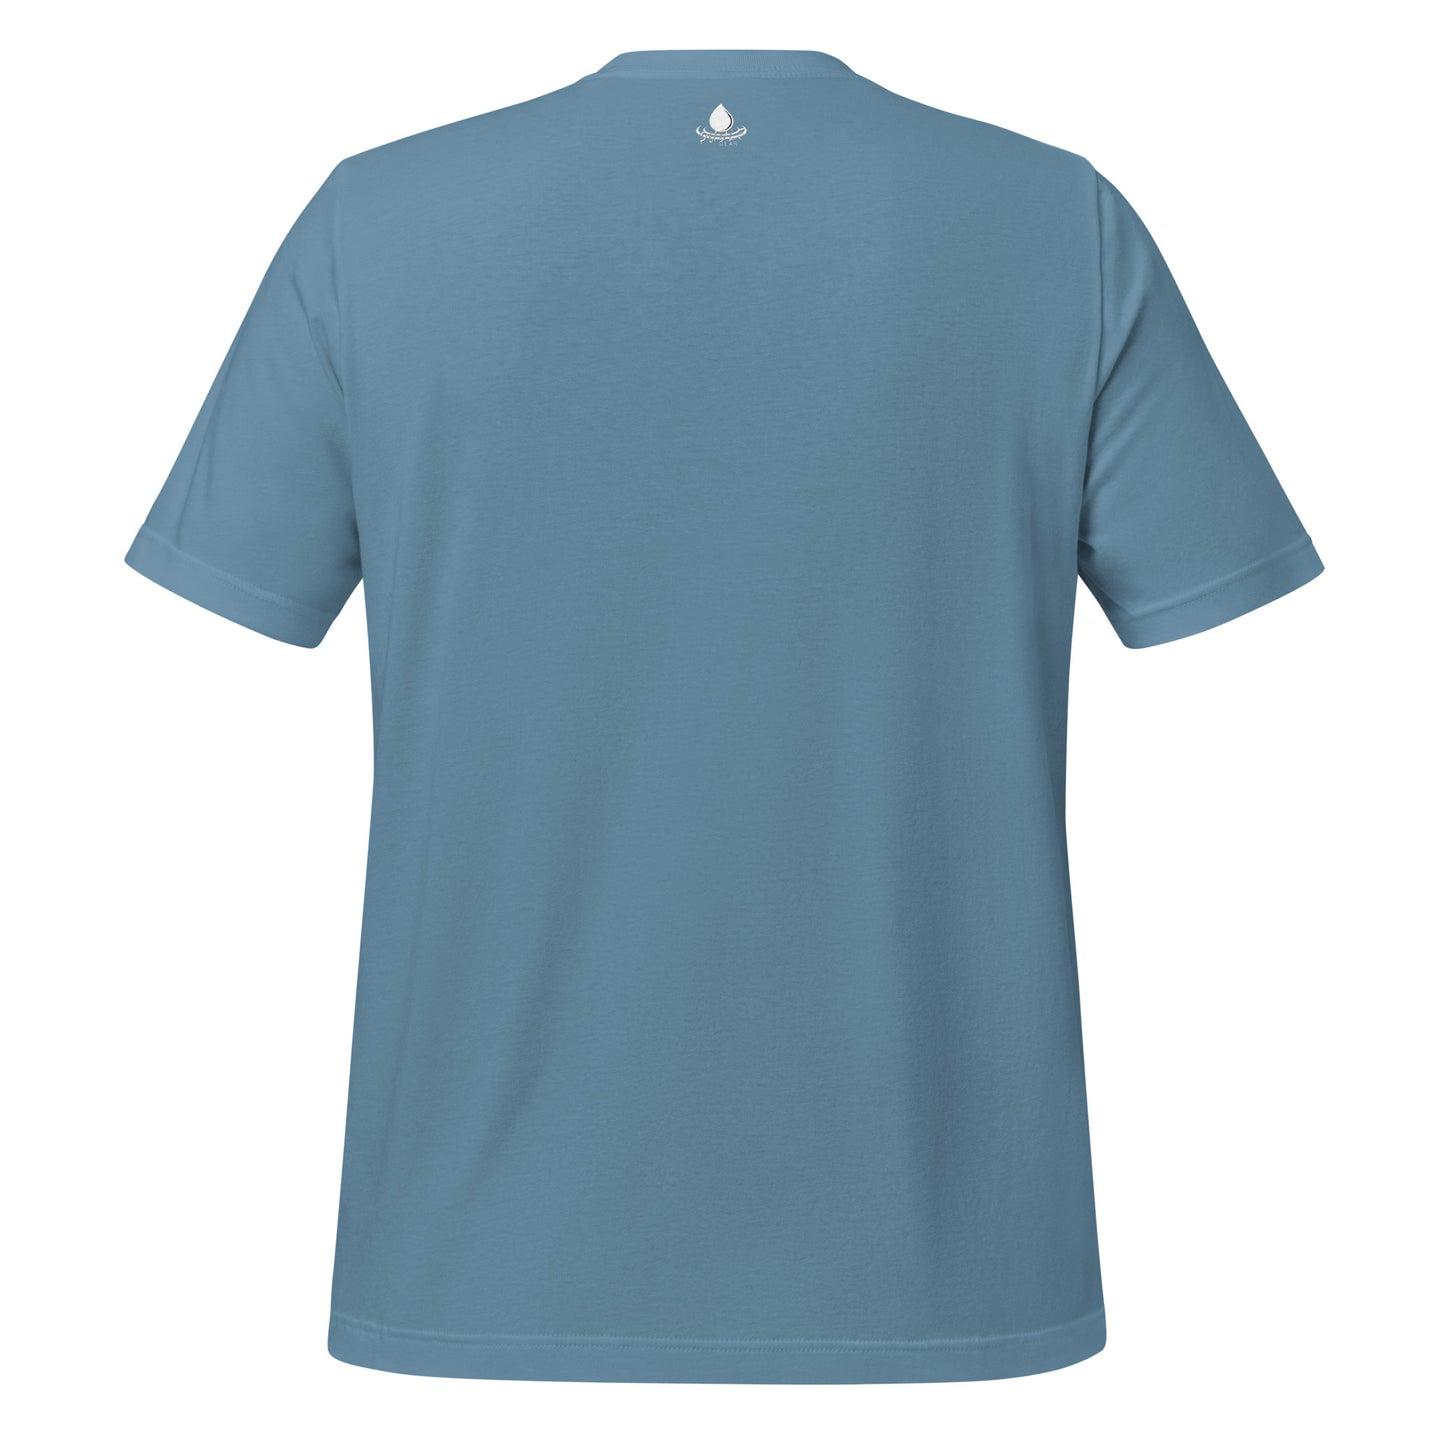 Cool Stormwater Geek - Unisex t-shirt